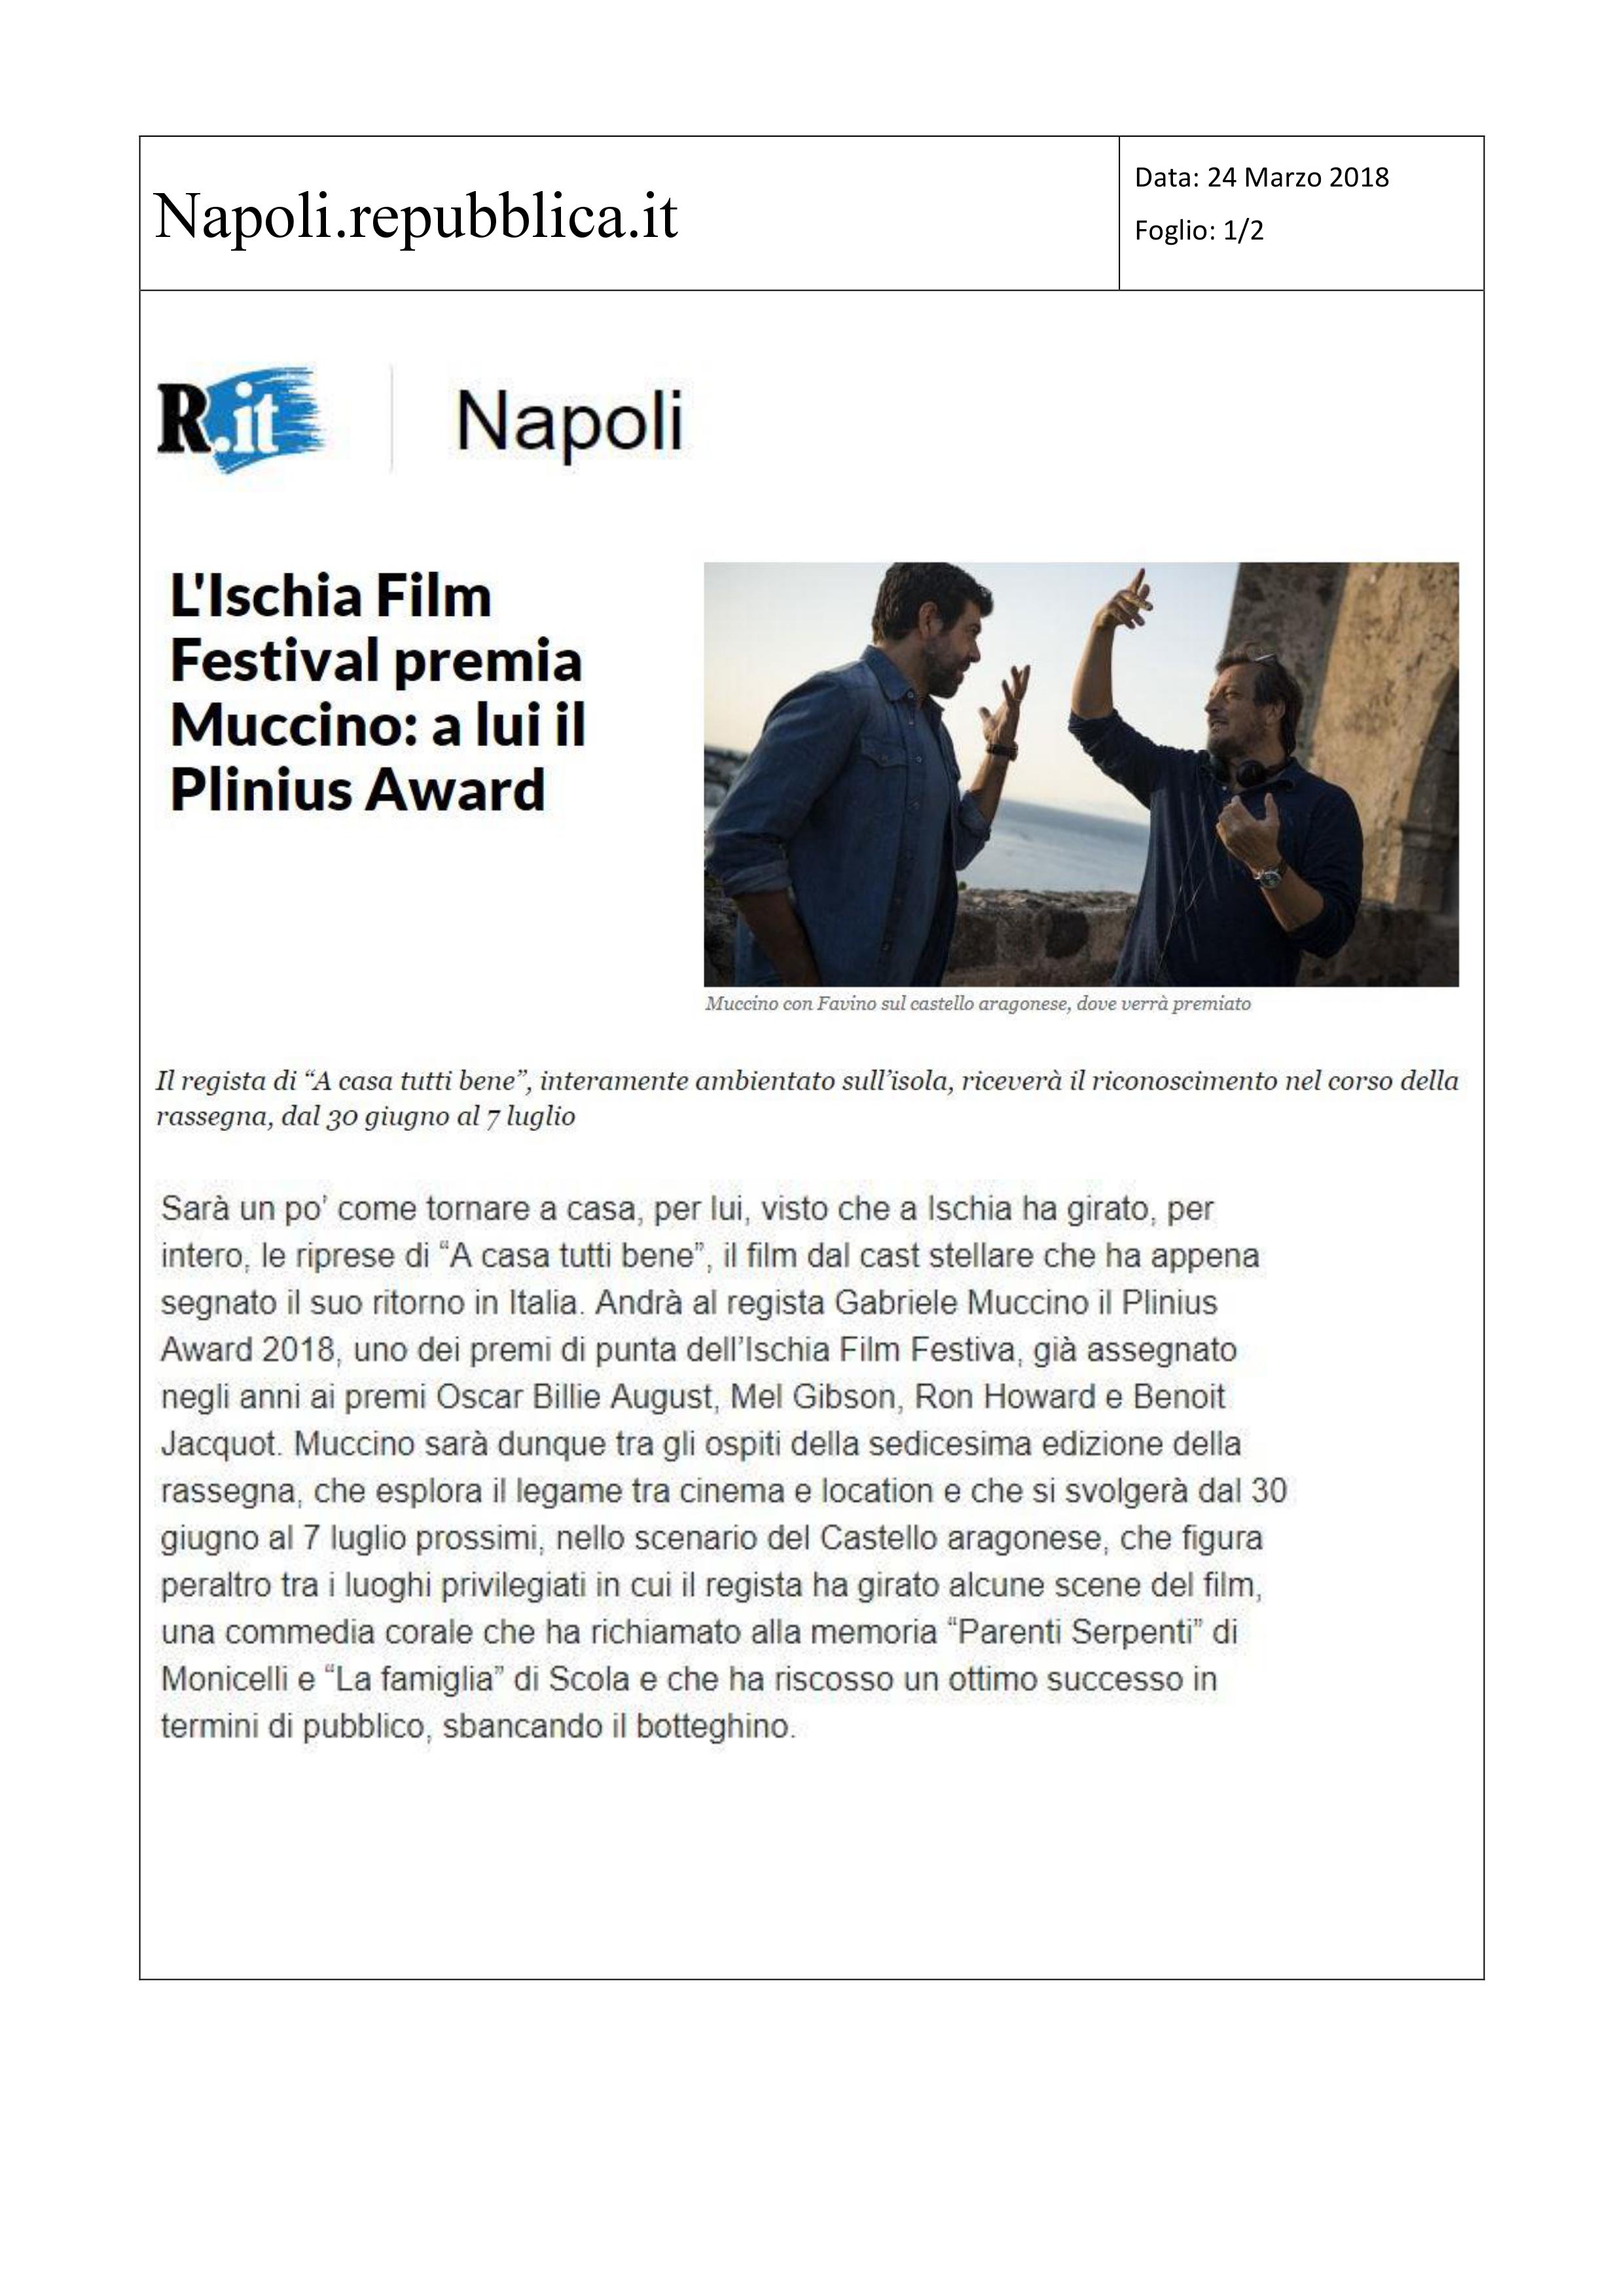 Napoli. Repubblica.it 24 marzo